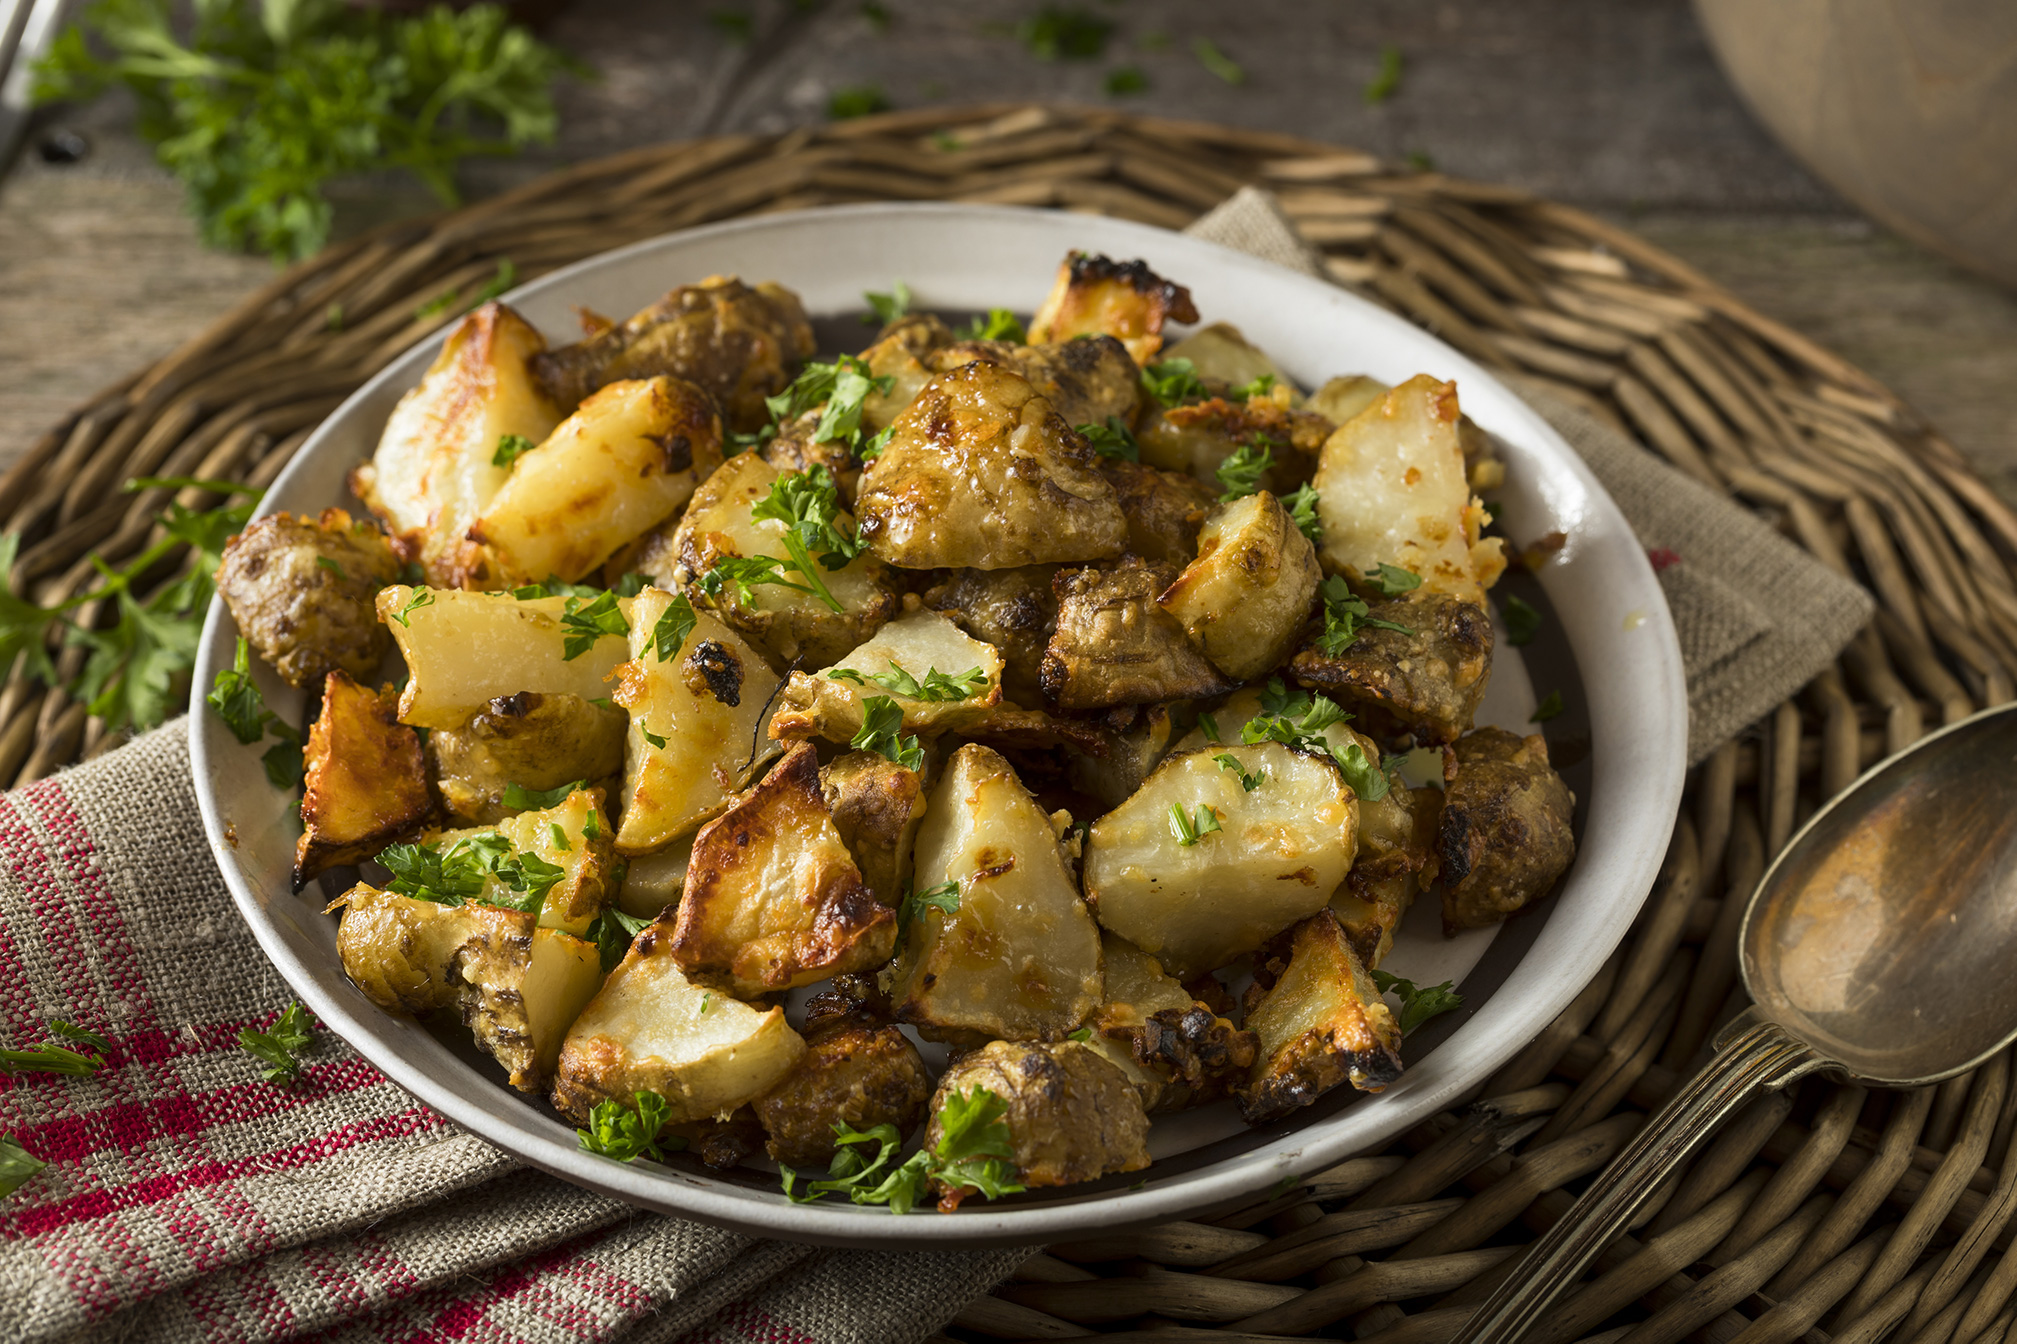 Roast artichokes and potatoes